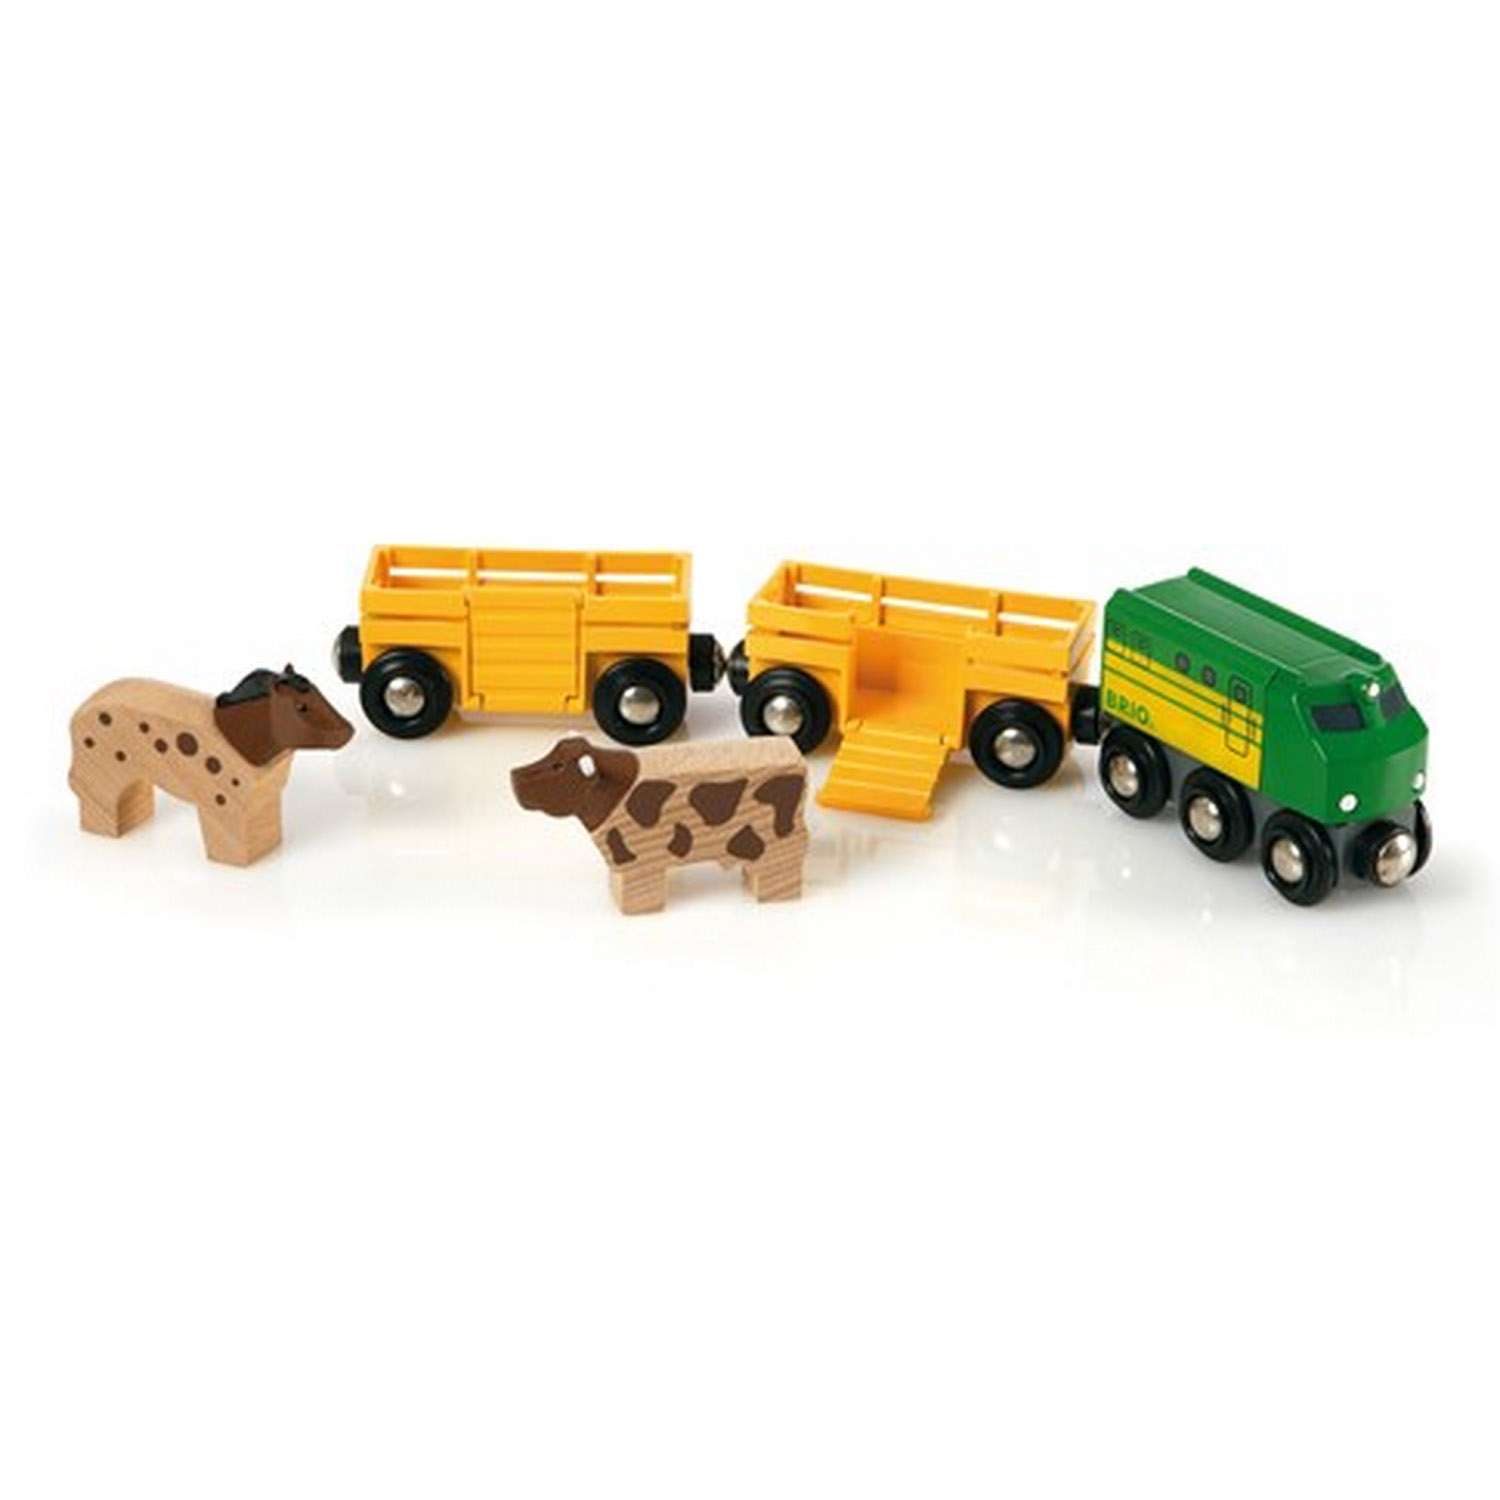 Железная дорога деревянная BRIO 3 грузовых вагона с животными 5 элементов - фото 1